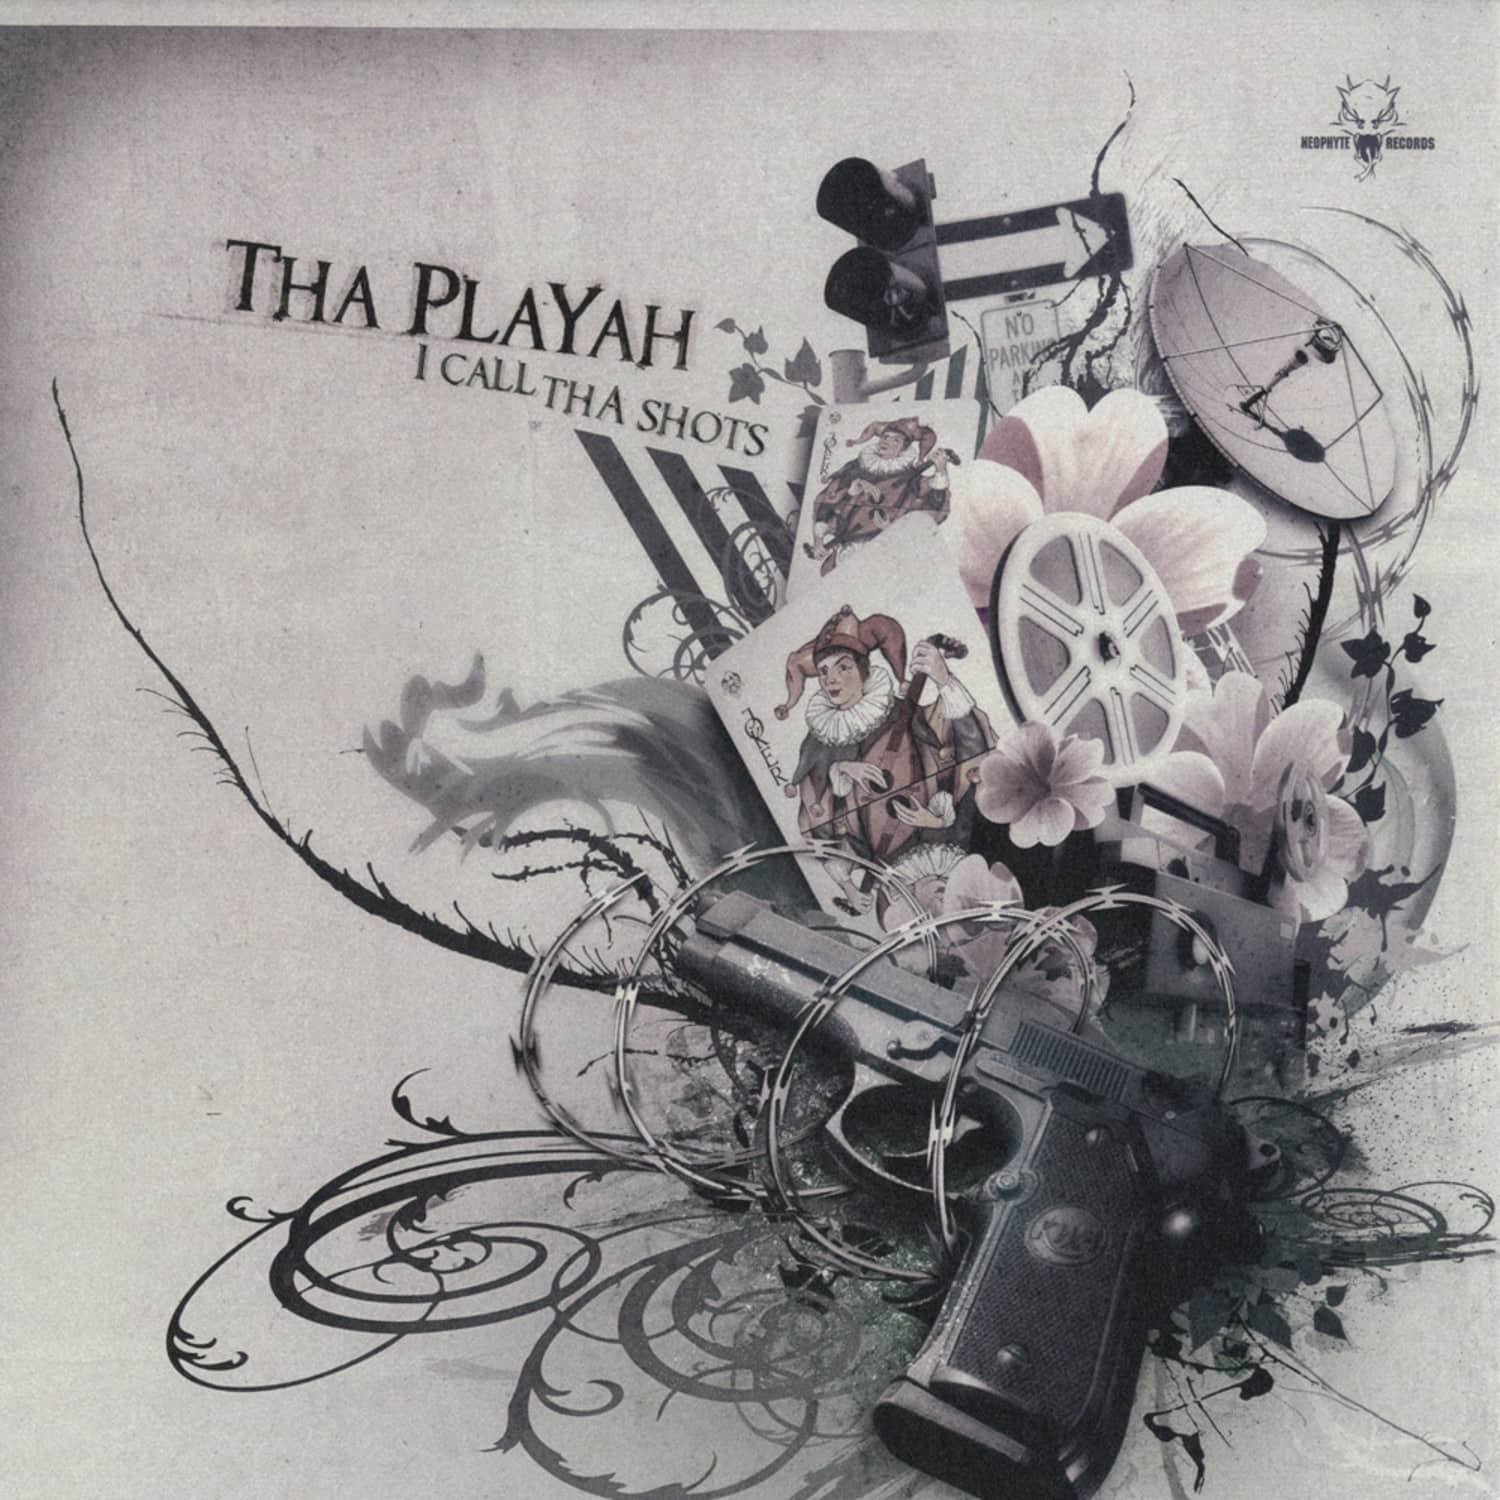 Tha Playah - I CALL THA SHOTS